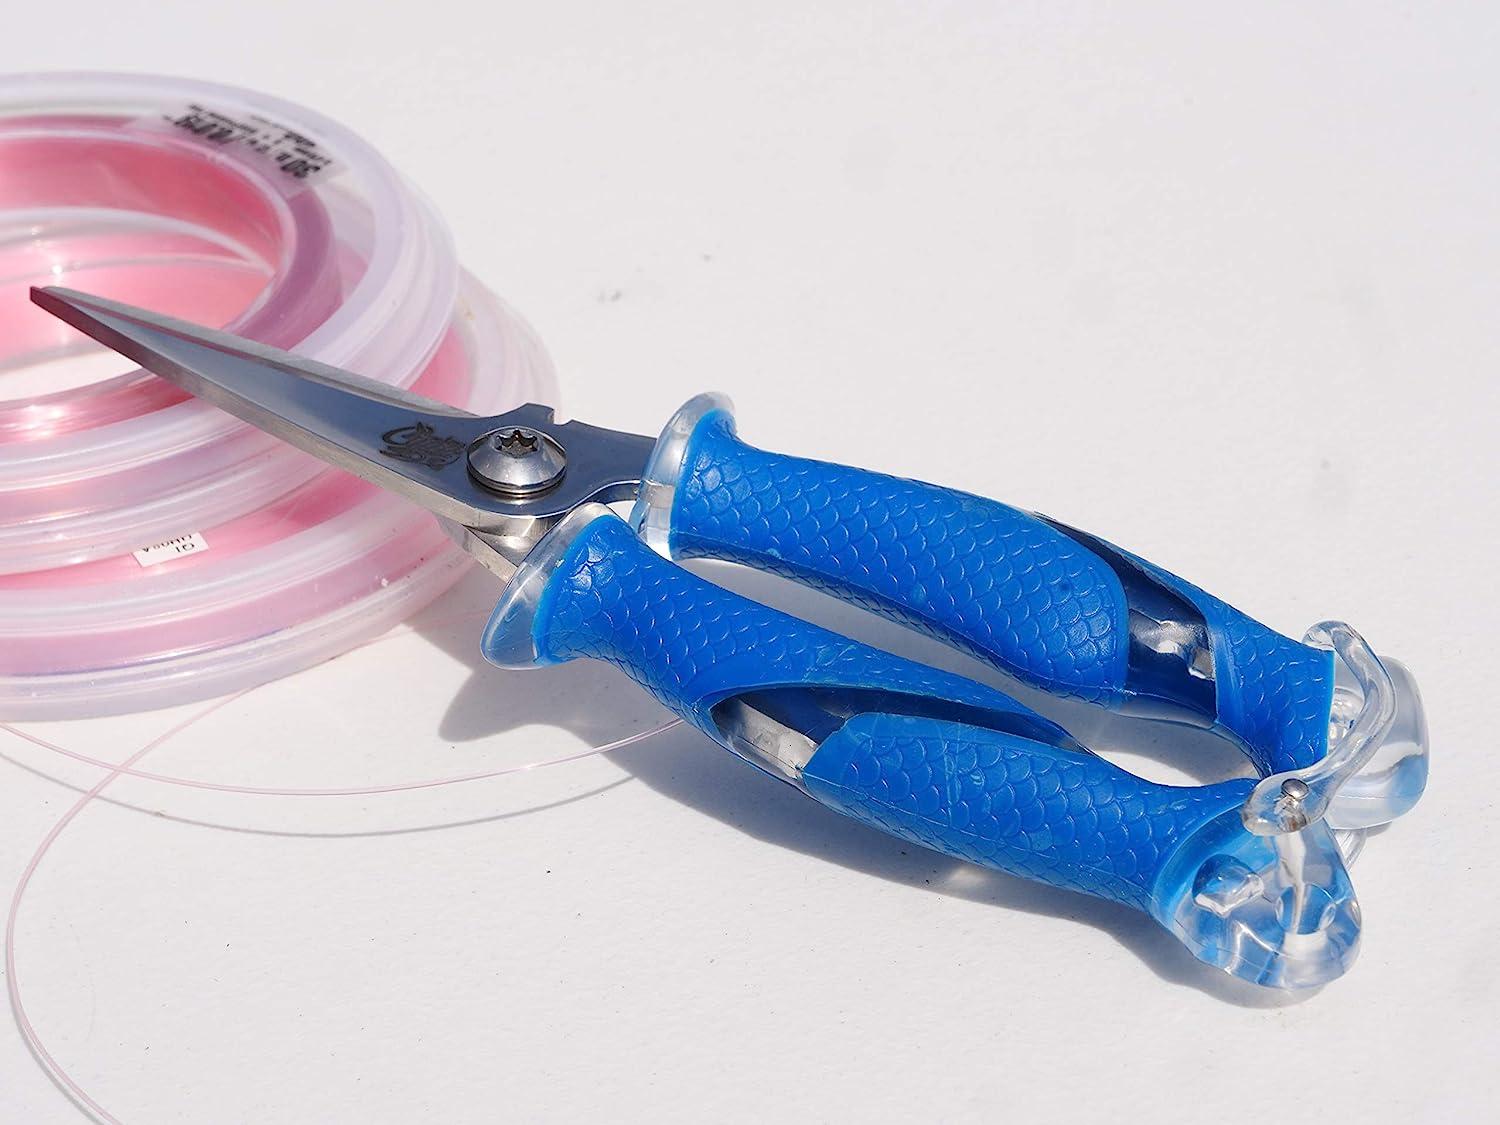 Cuda Titanium-Bonded Fishing Scissors with Micro Serrated Edges